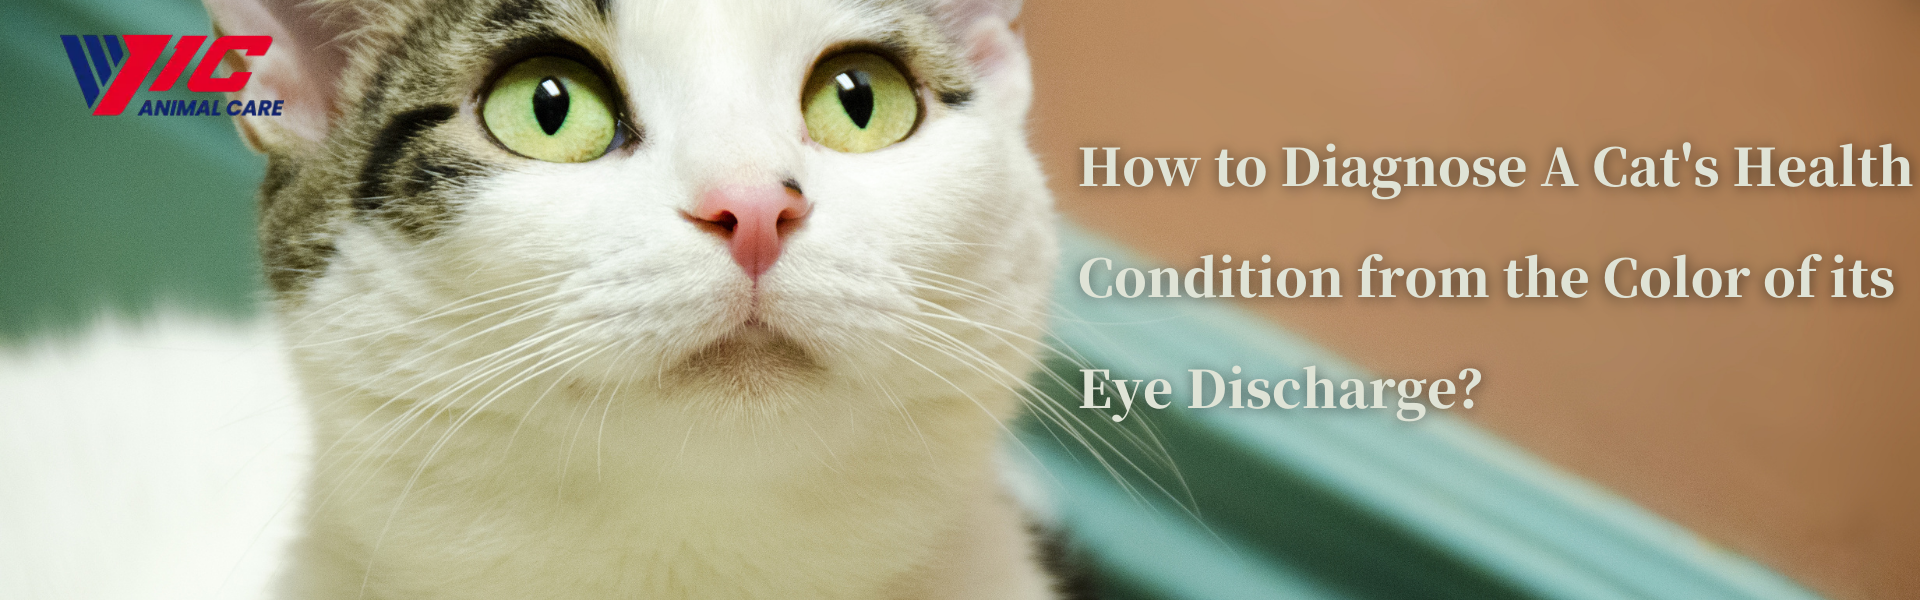 چگونه می توان وضعیت سلامت گربه را از روی رنگ ترشحات چشمش تشخیص داد؟